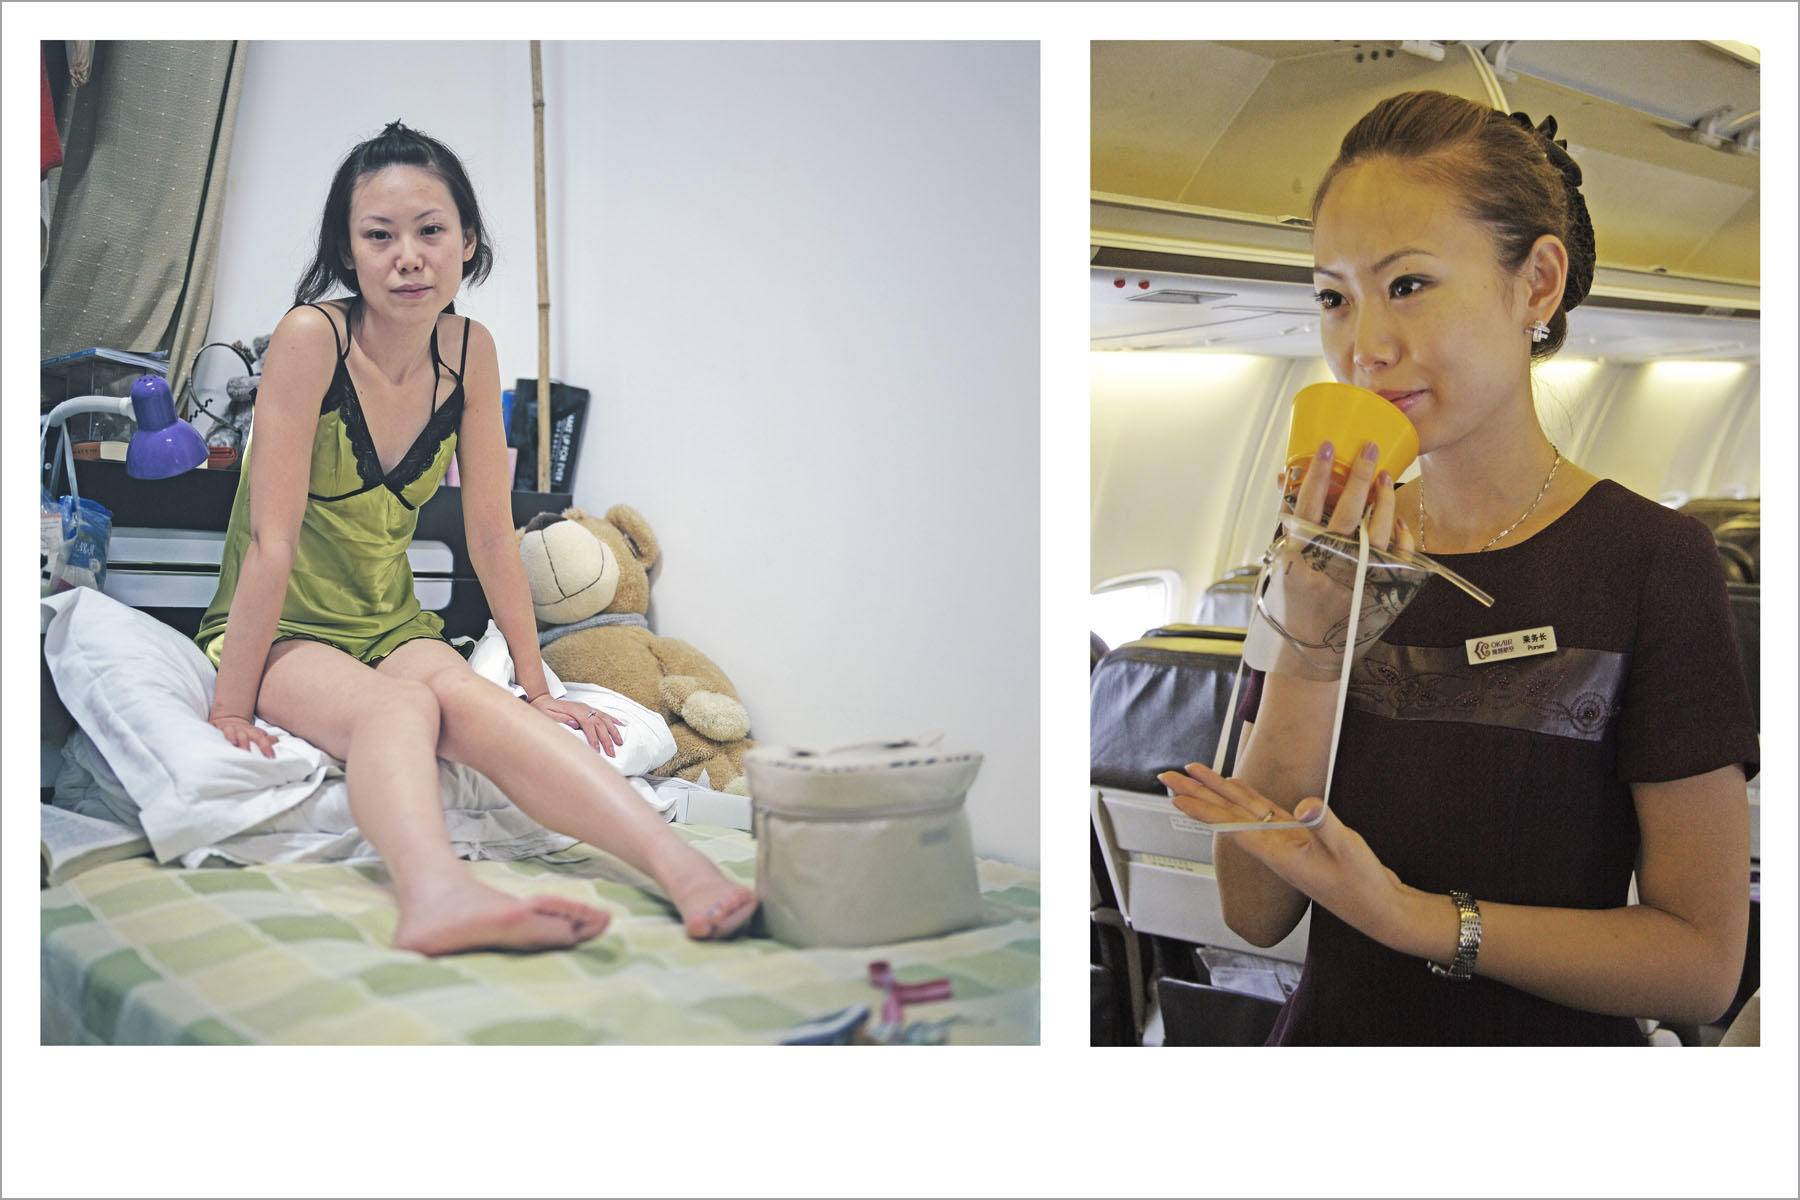 [国产/写真] 私圈流出厦门航空空姐首第一次害羞裸体出镜私拍[MP4/421MB/BT]|三級寫真|新片速递 - 首頁